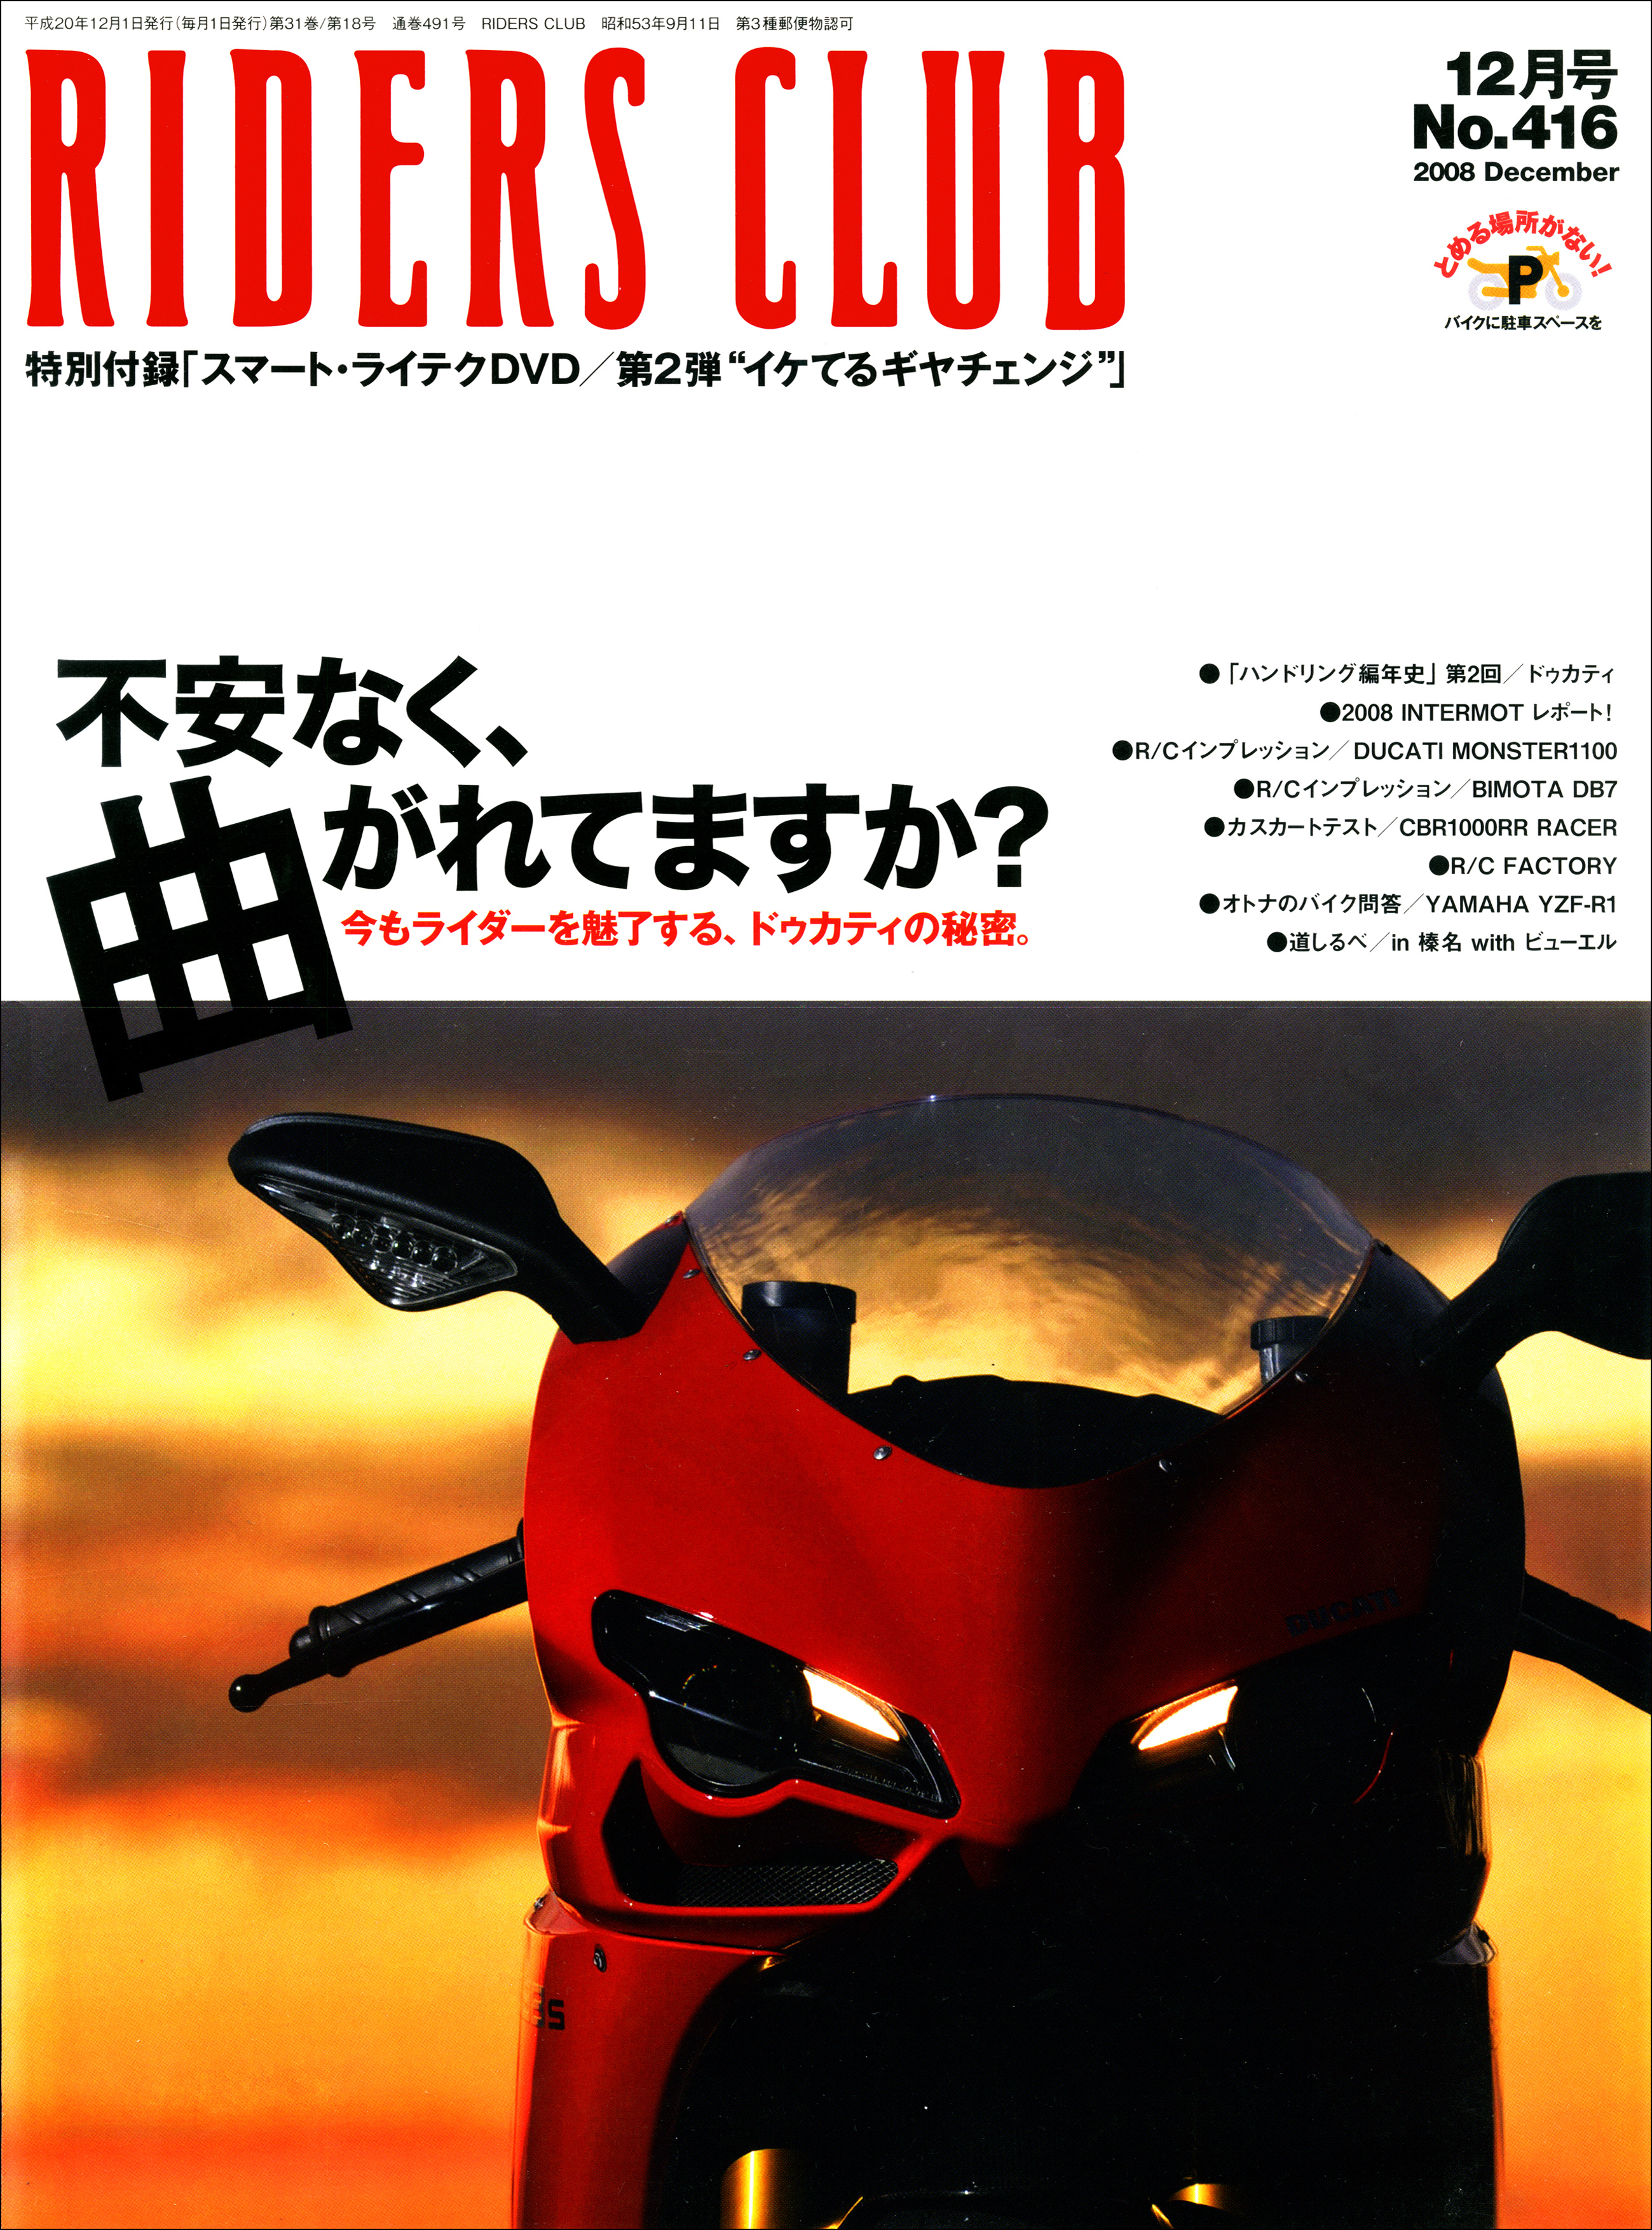 RIDERS CLUB 2008年12月号 No.416 - ライダースクラブ編集部 - 雑誌 